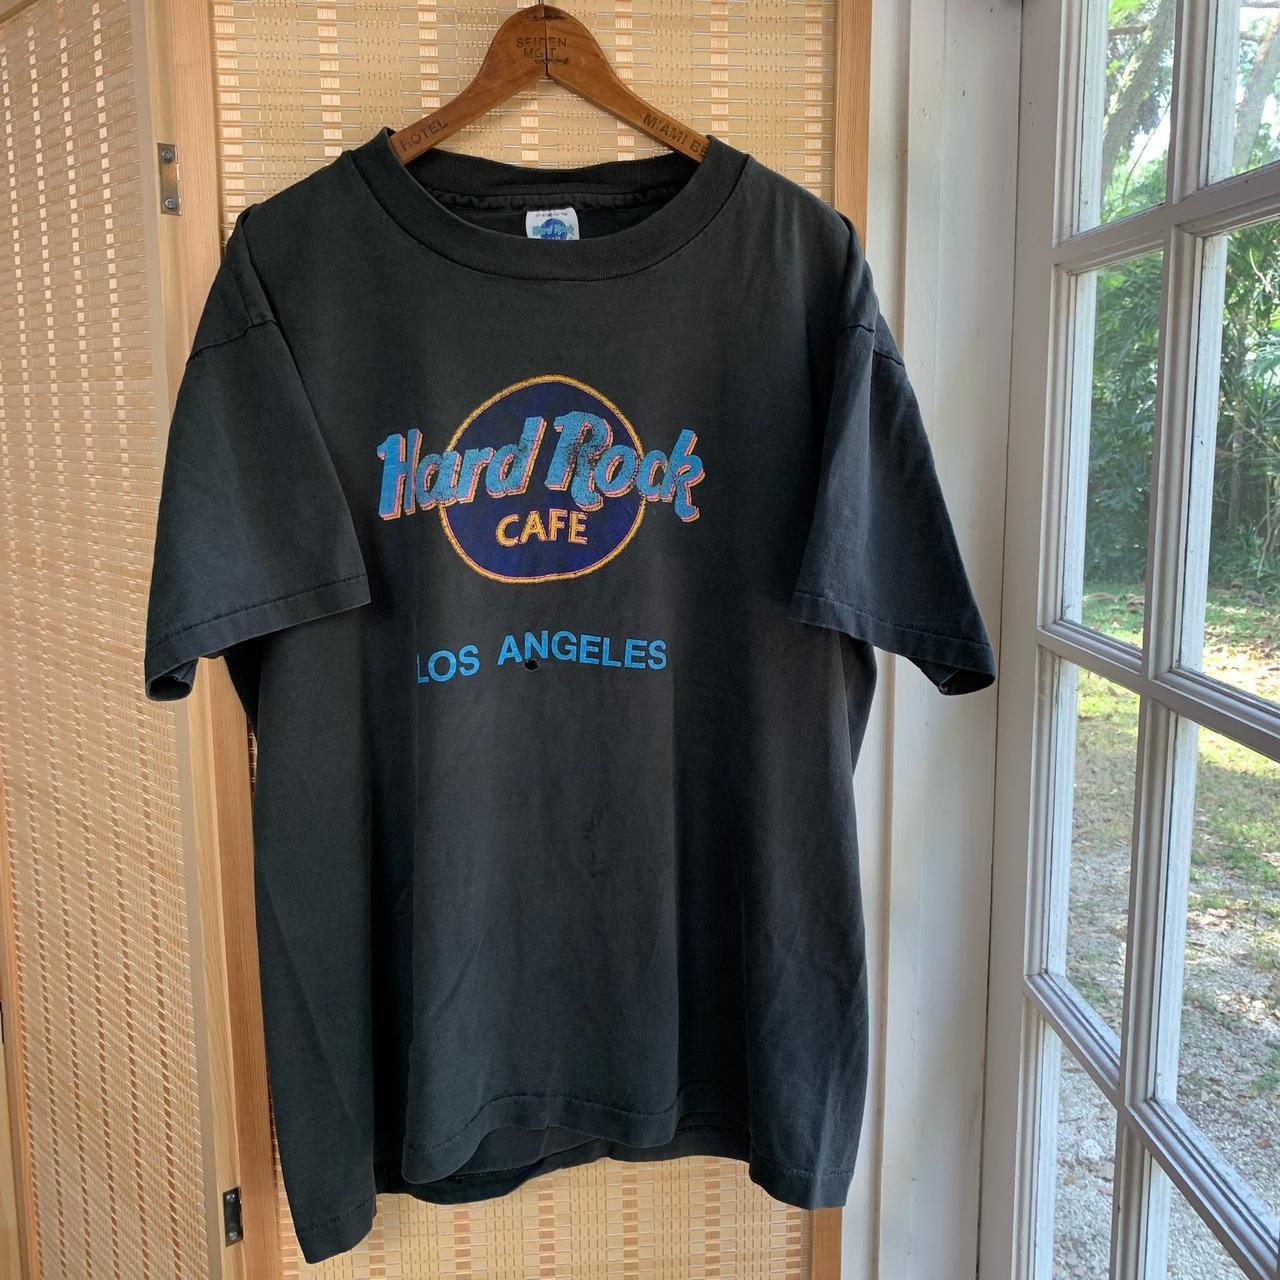 Vintage 90s Hard Rock Cafe LA t shirt Size mens XL... - Depop